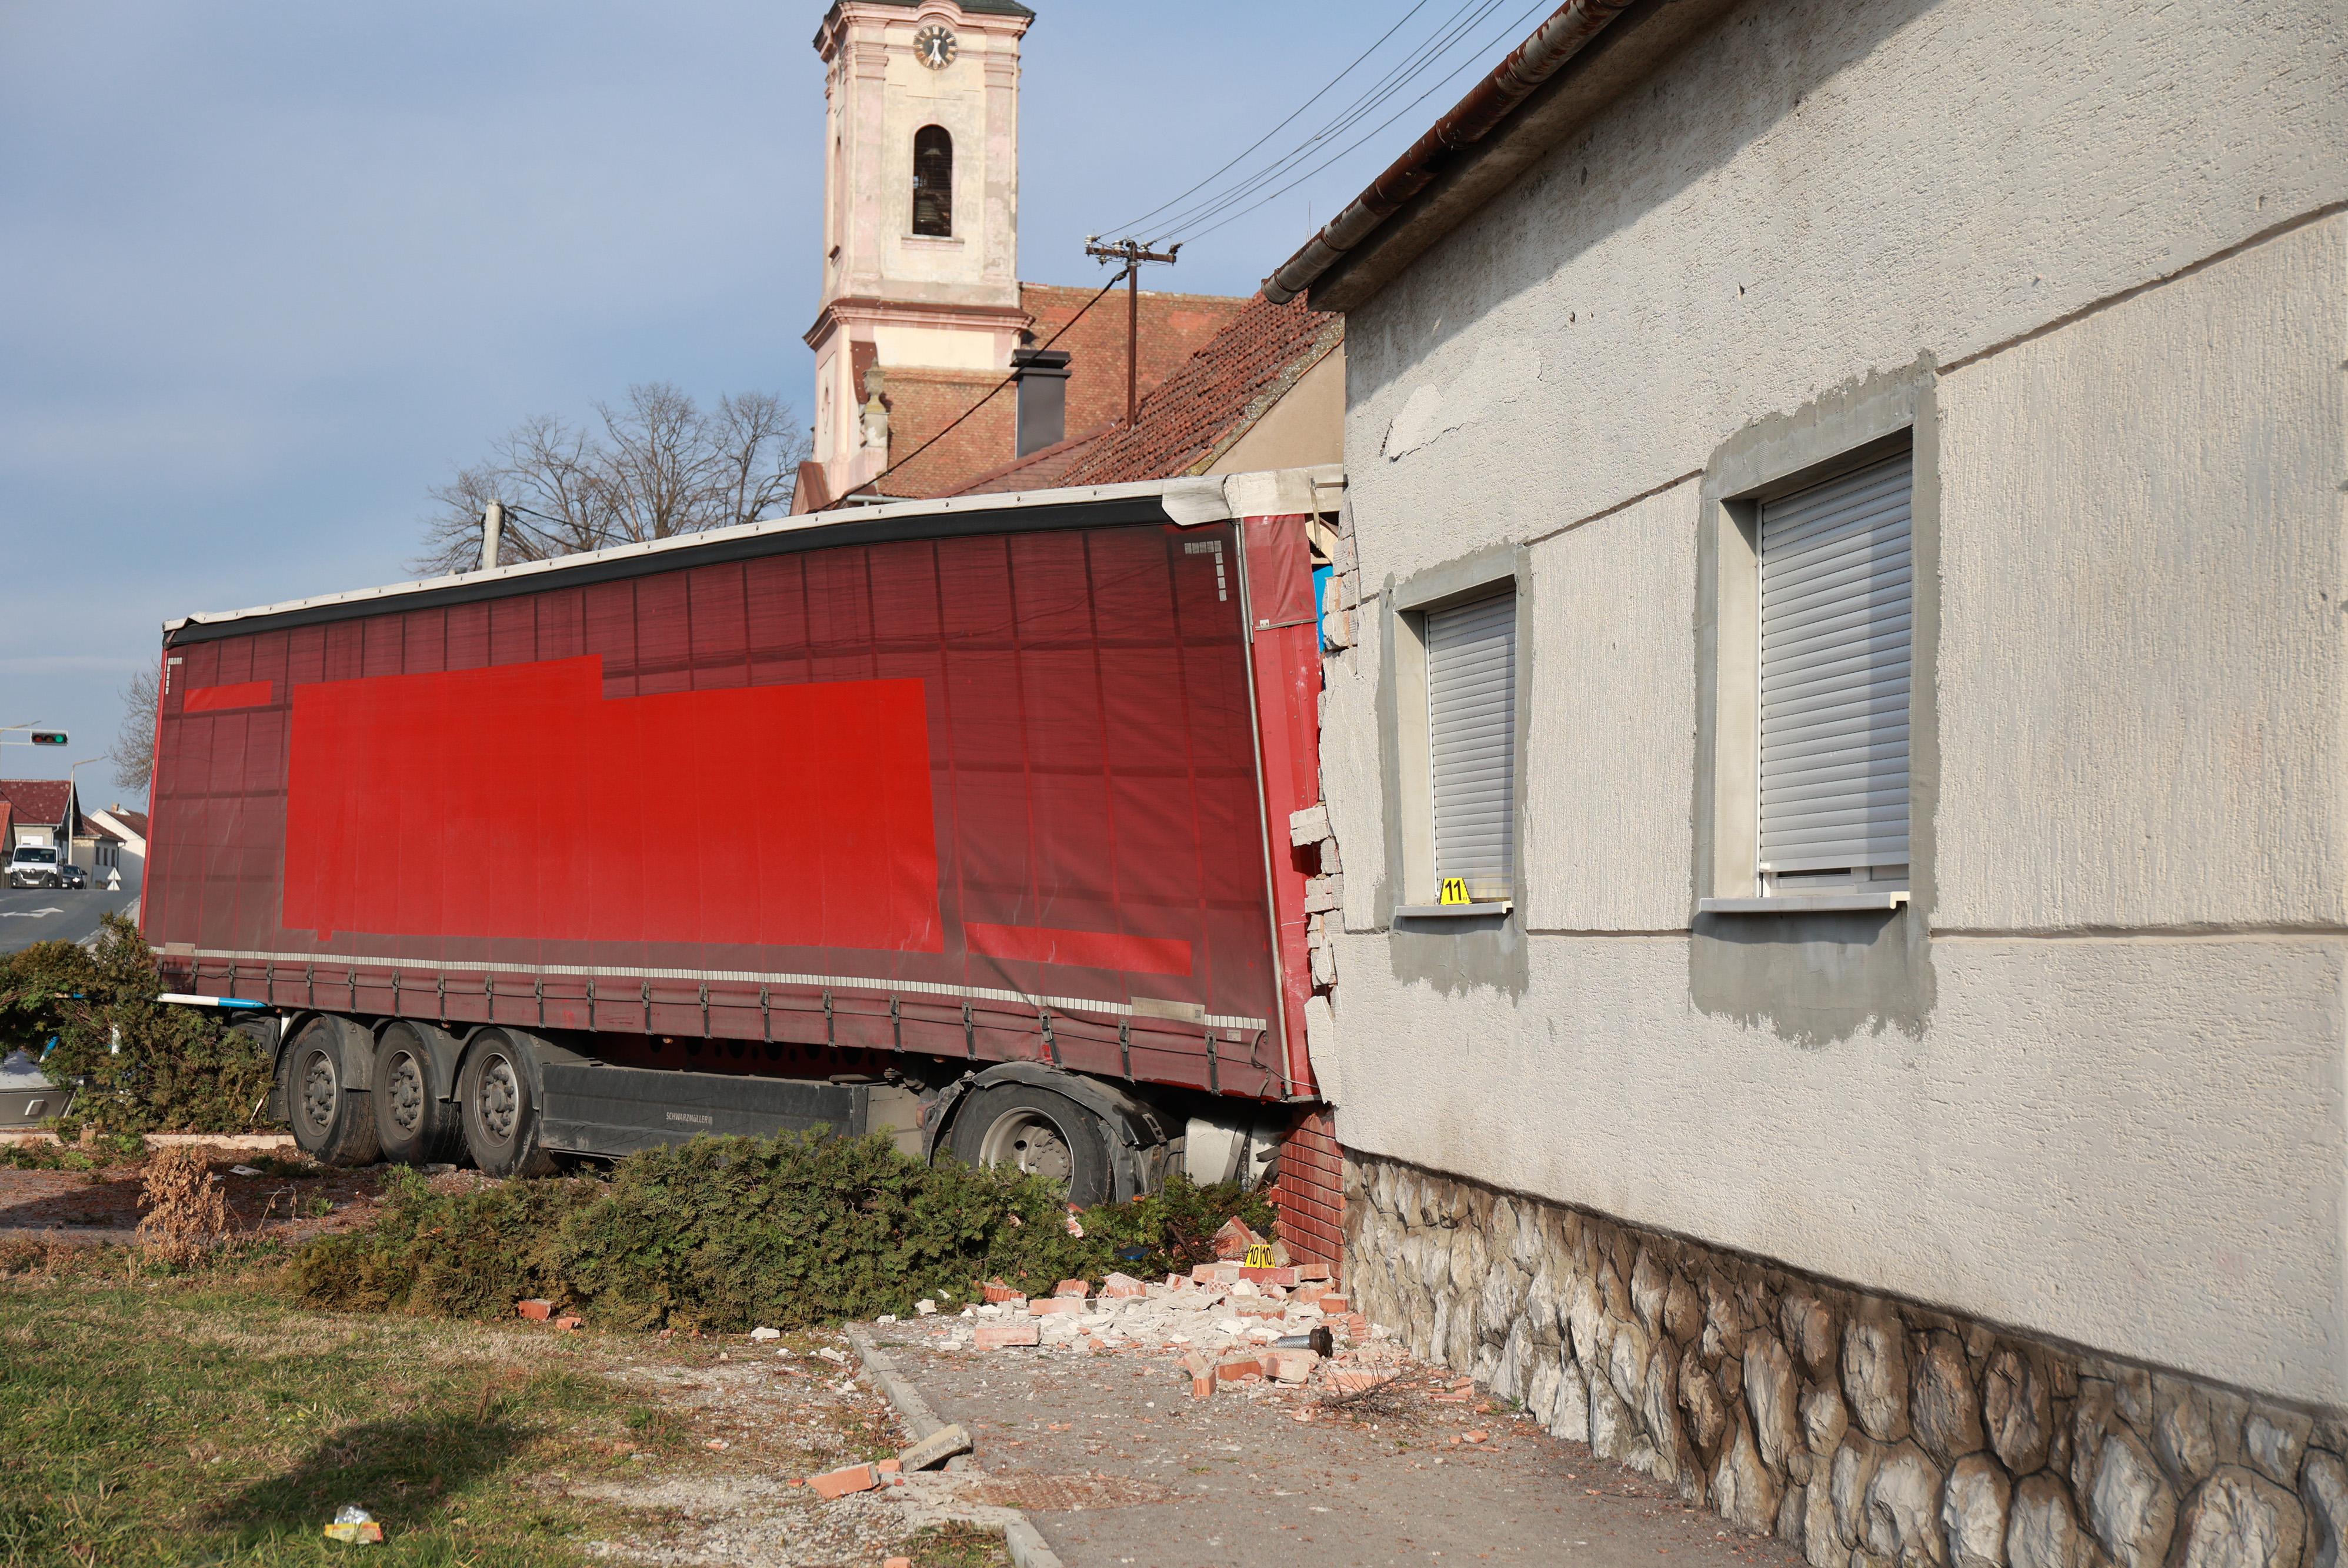 Sprednji del tovornjaka je prebil steno hiše.